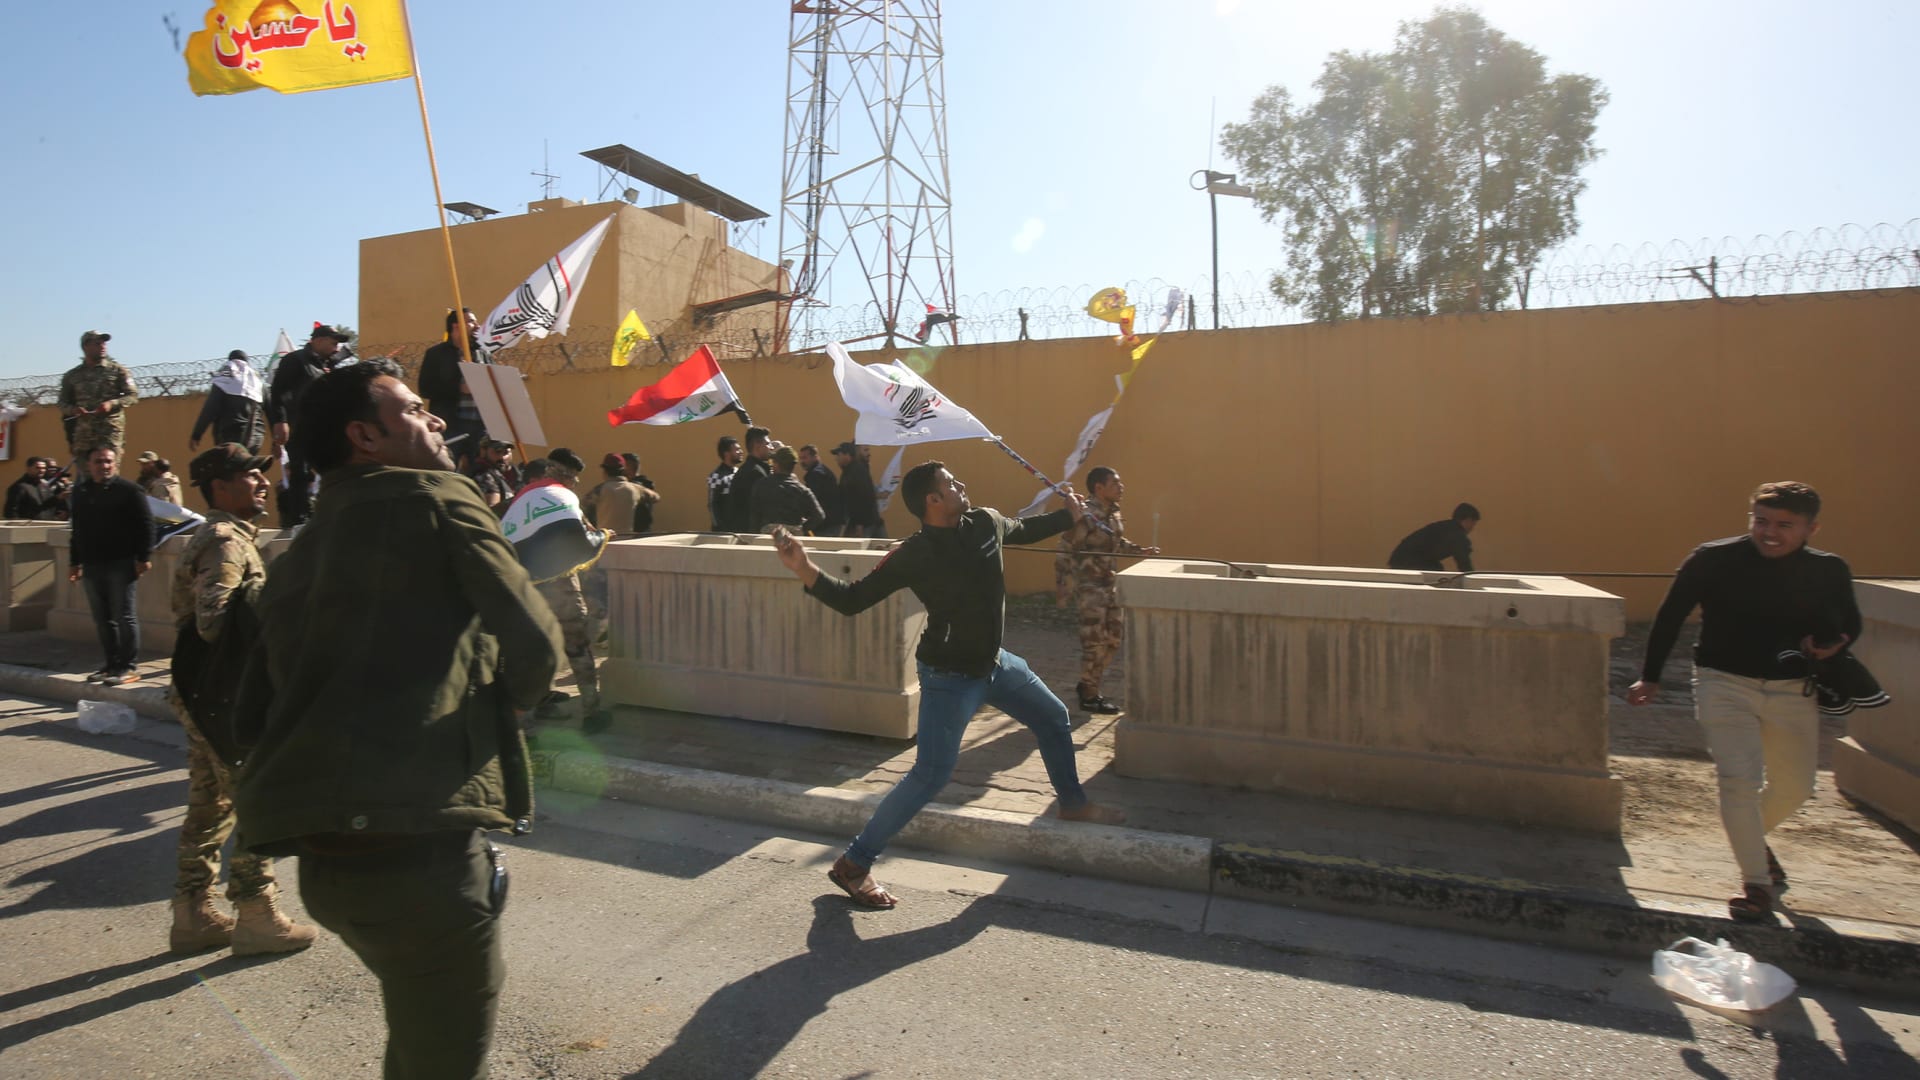 الآلاف يحاصرون السفارة الأمريكية في بغداد